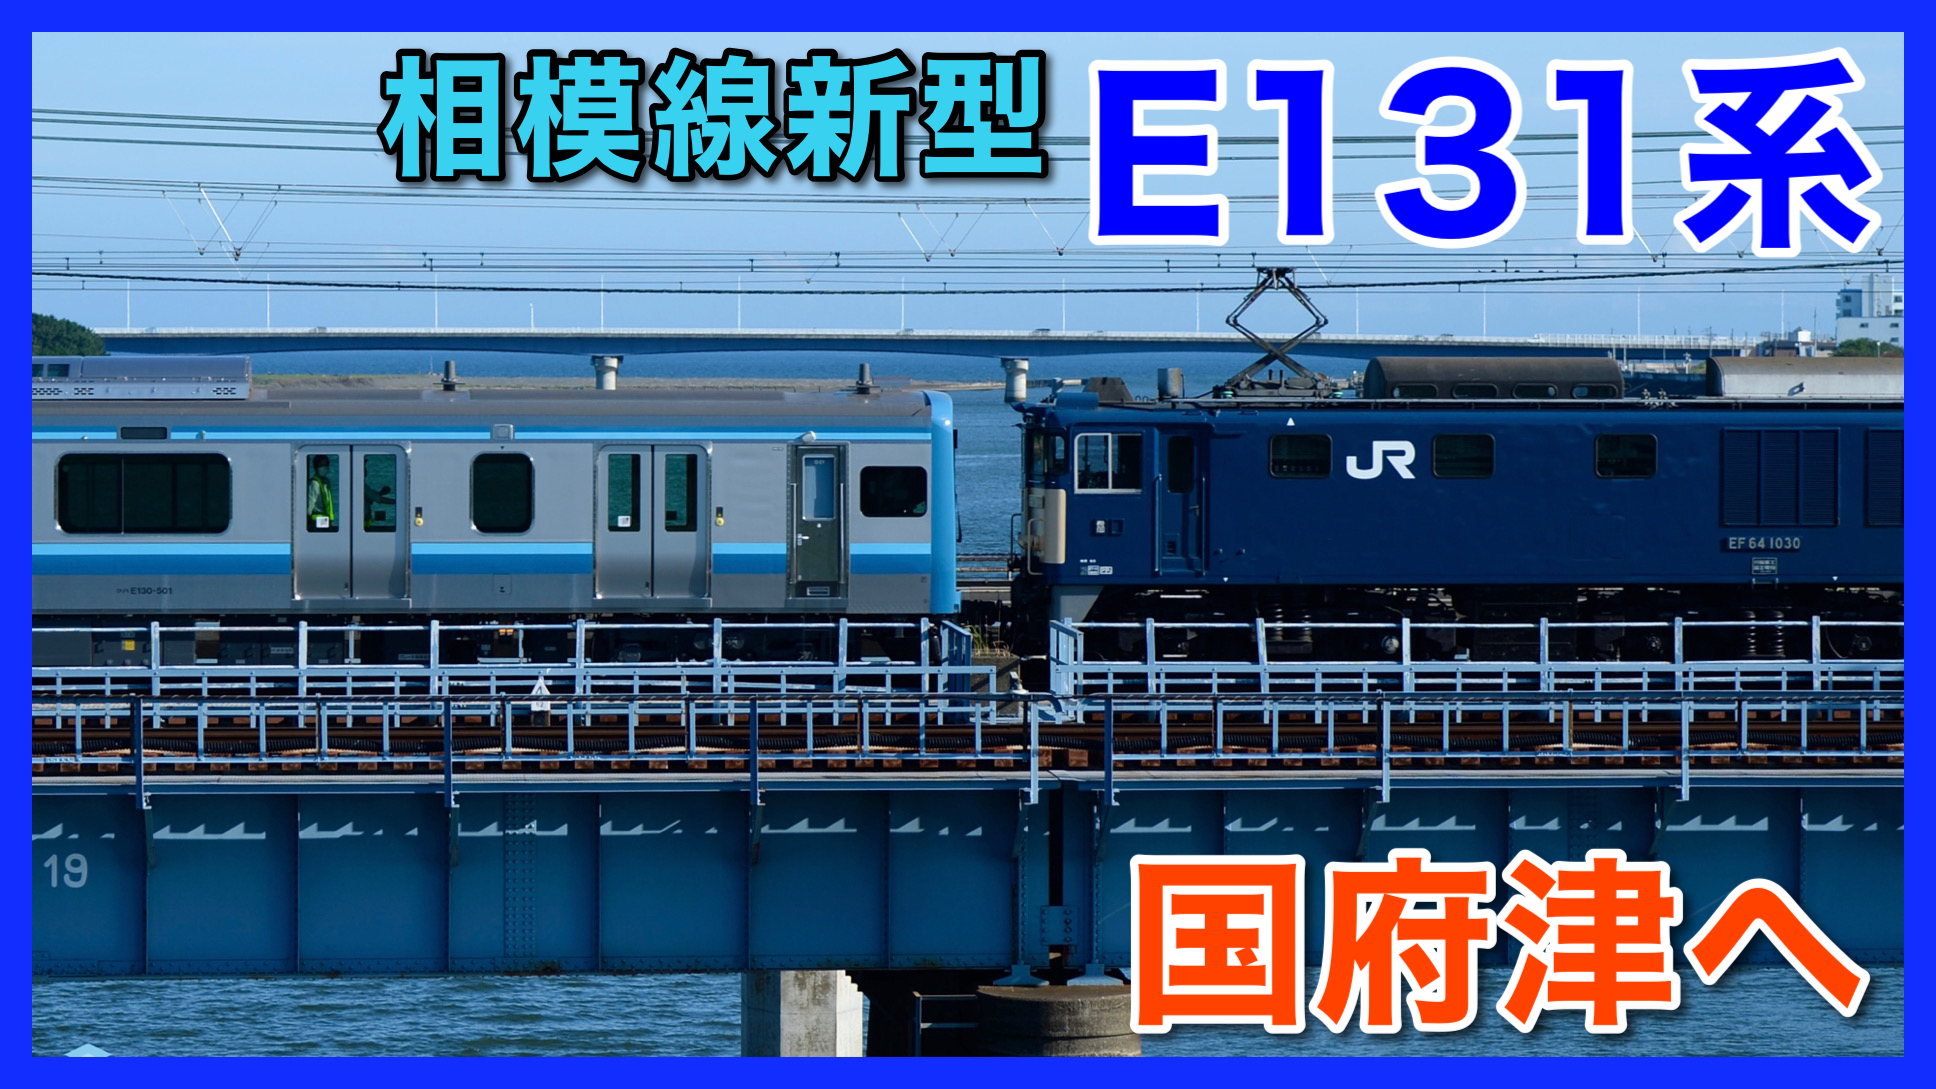 さざ波デザイン 相模線新型e131系500番台g 01編成が国府津へ配給輸送 鉄道ファンの待合室